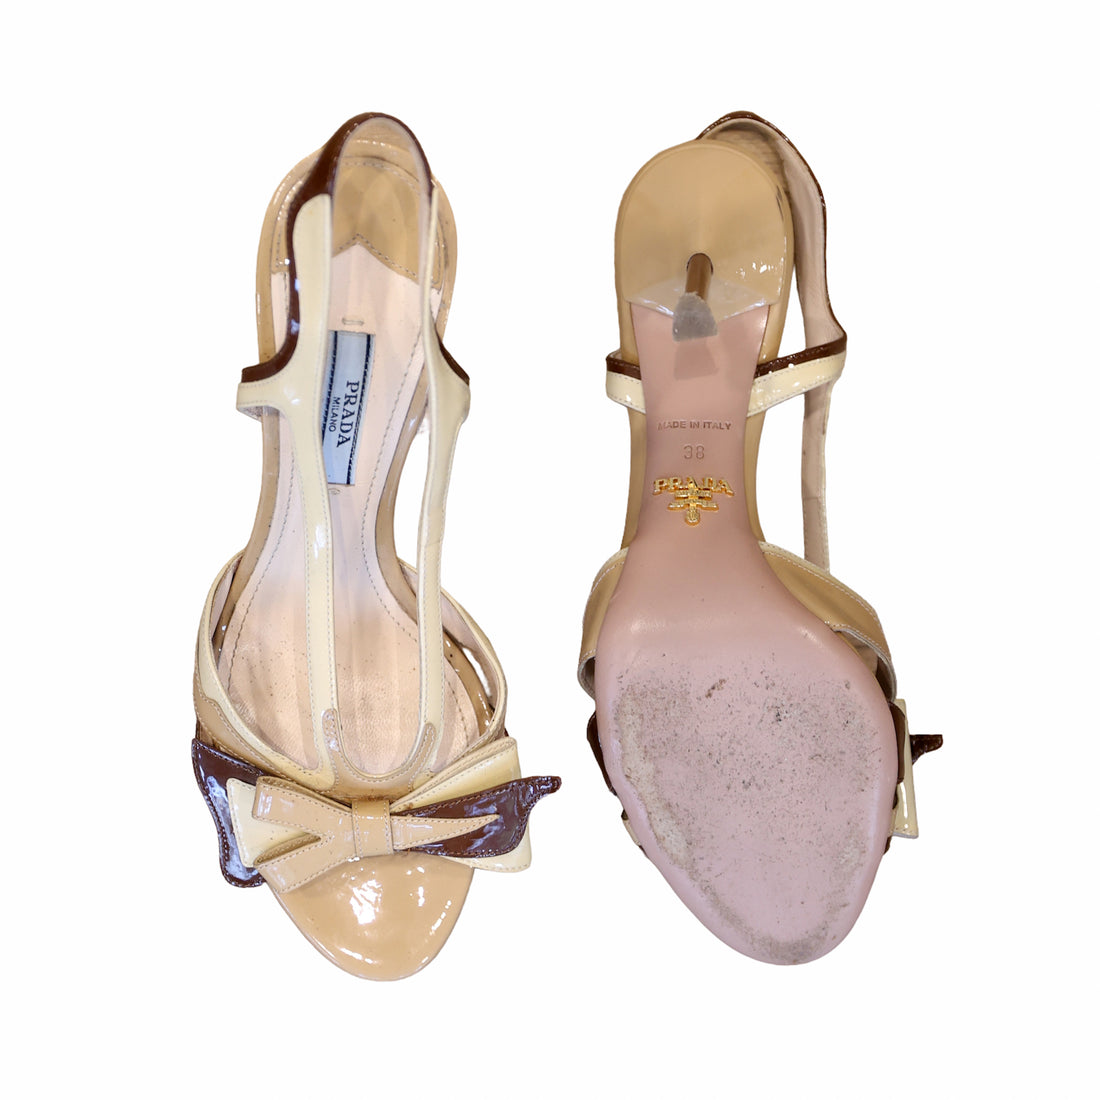 Prada patent leather sandals